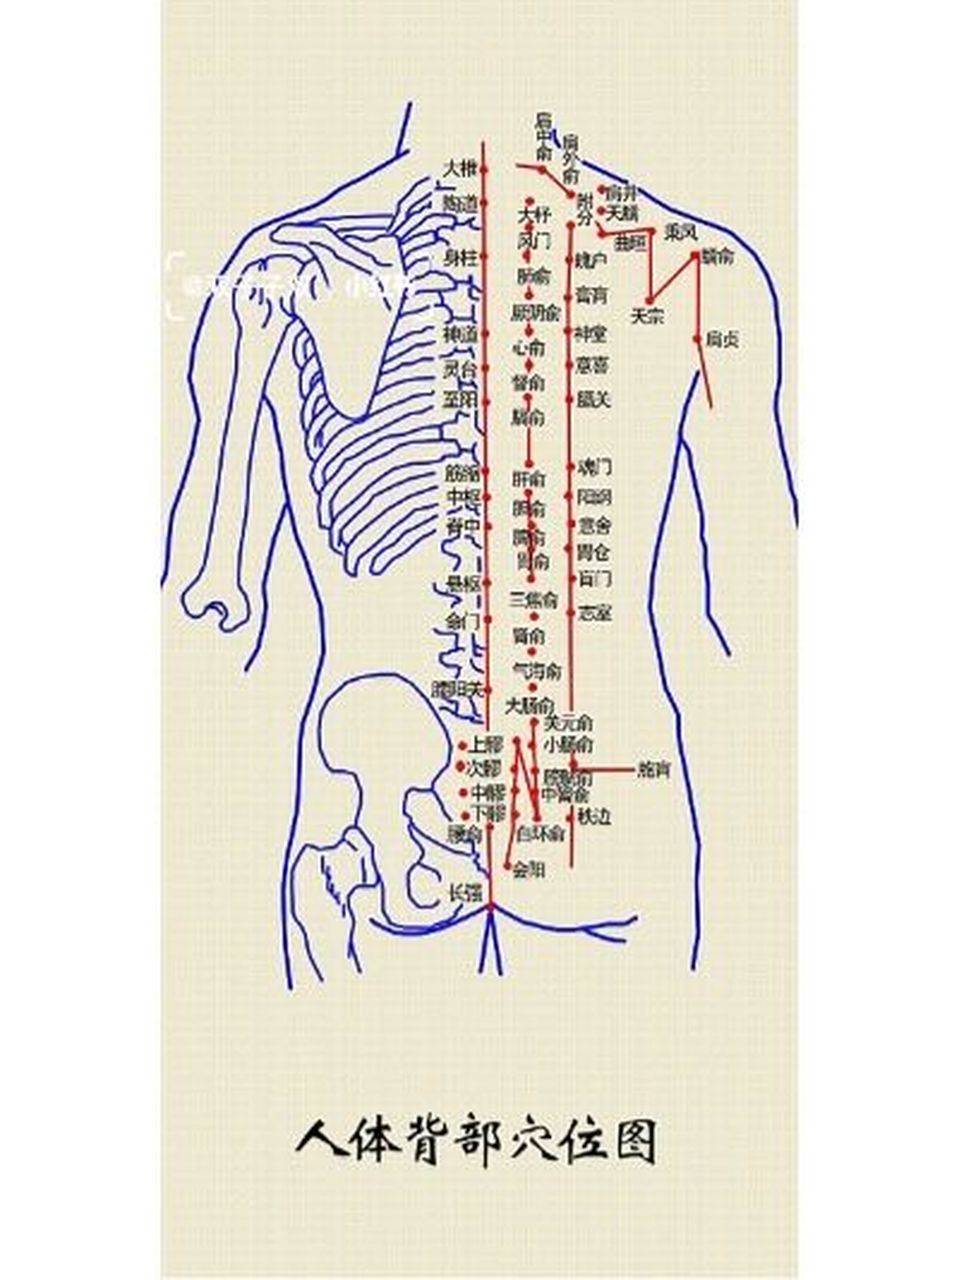 后背的穴位怎么找 从上往下人体脊柱分为七节颈椎,十二节胸椎,五节